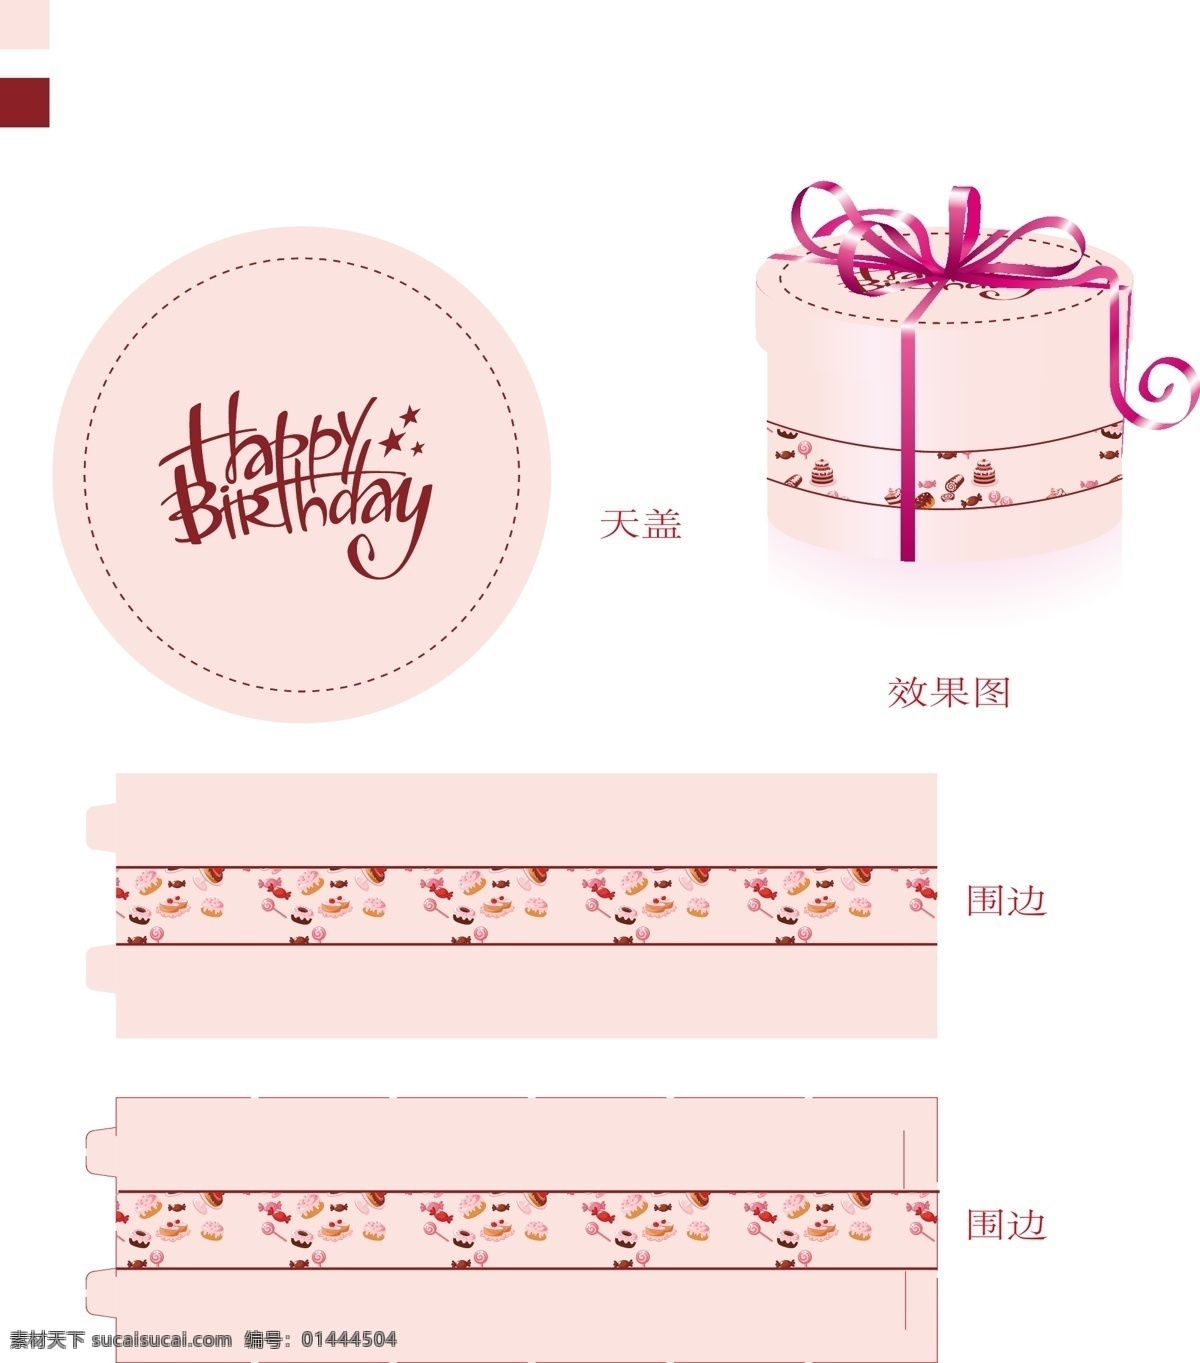 生日蛋糕包装 蛋糕盒 包装 蛋糕包装 蛋糕包装设计 圆形盒子包装 礼品包装 纸盒包装设计 包装设计